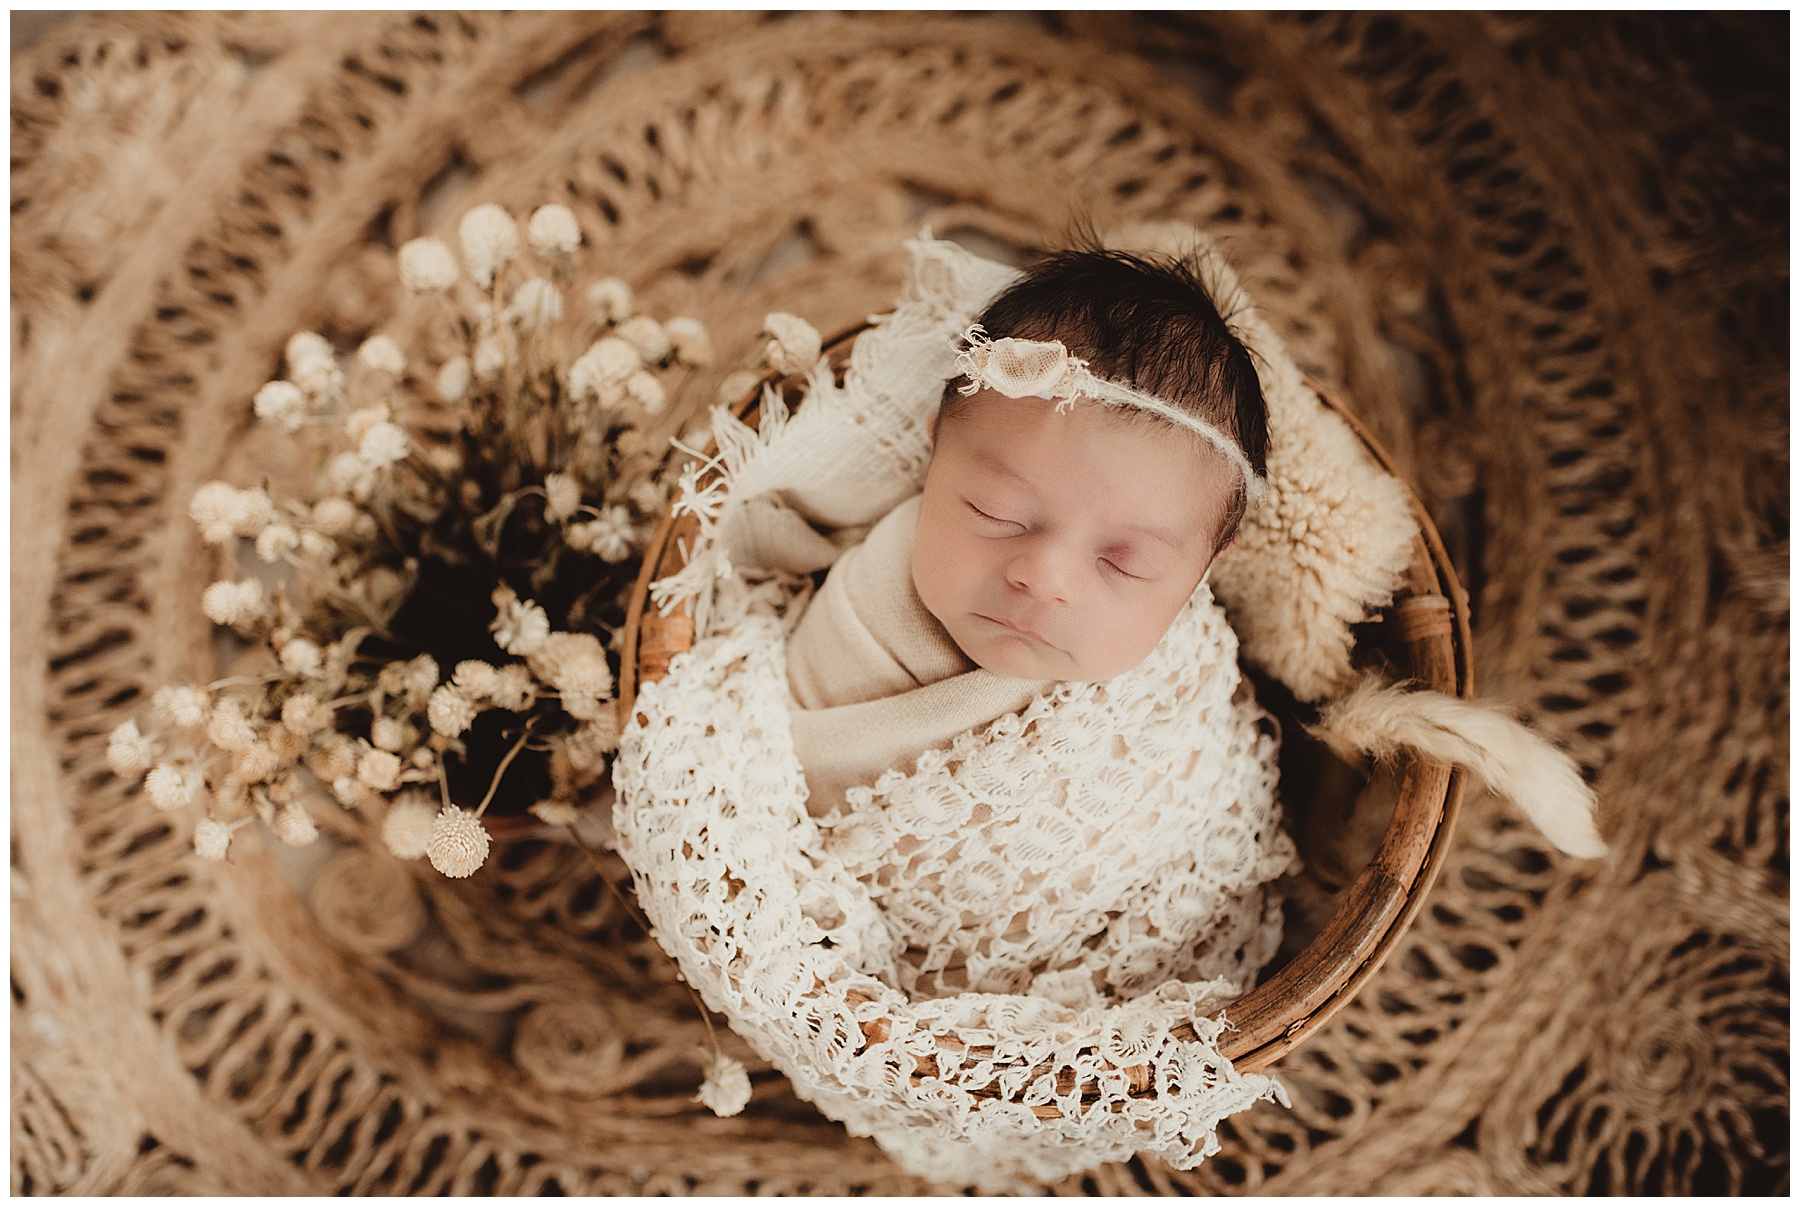 Newborn Girl in Basket